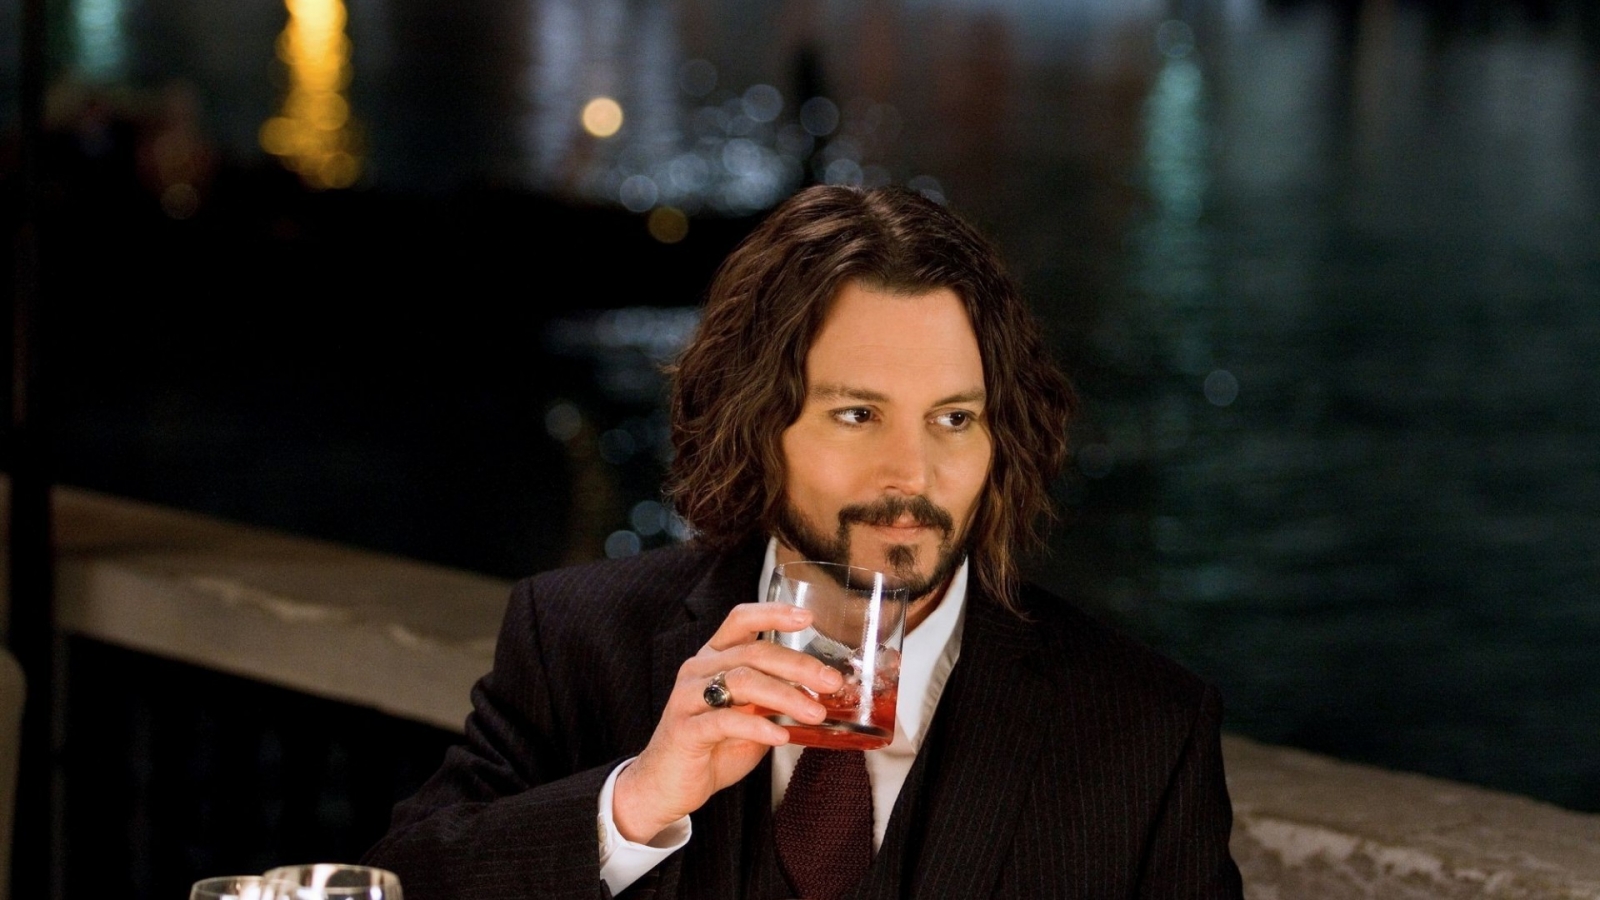 Johnny Depp Drinking for 1600 x 900 HDTV resolution